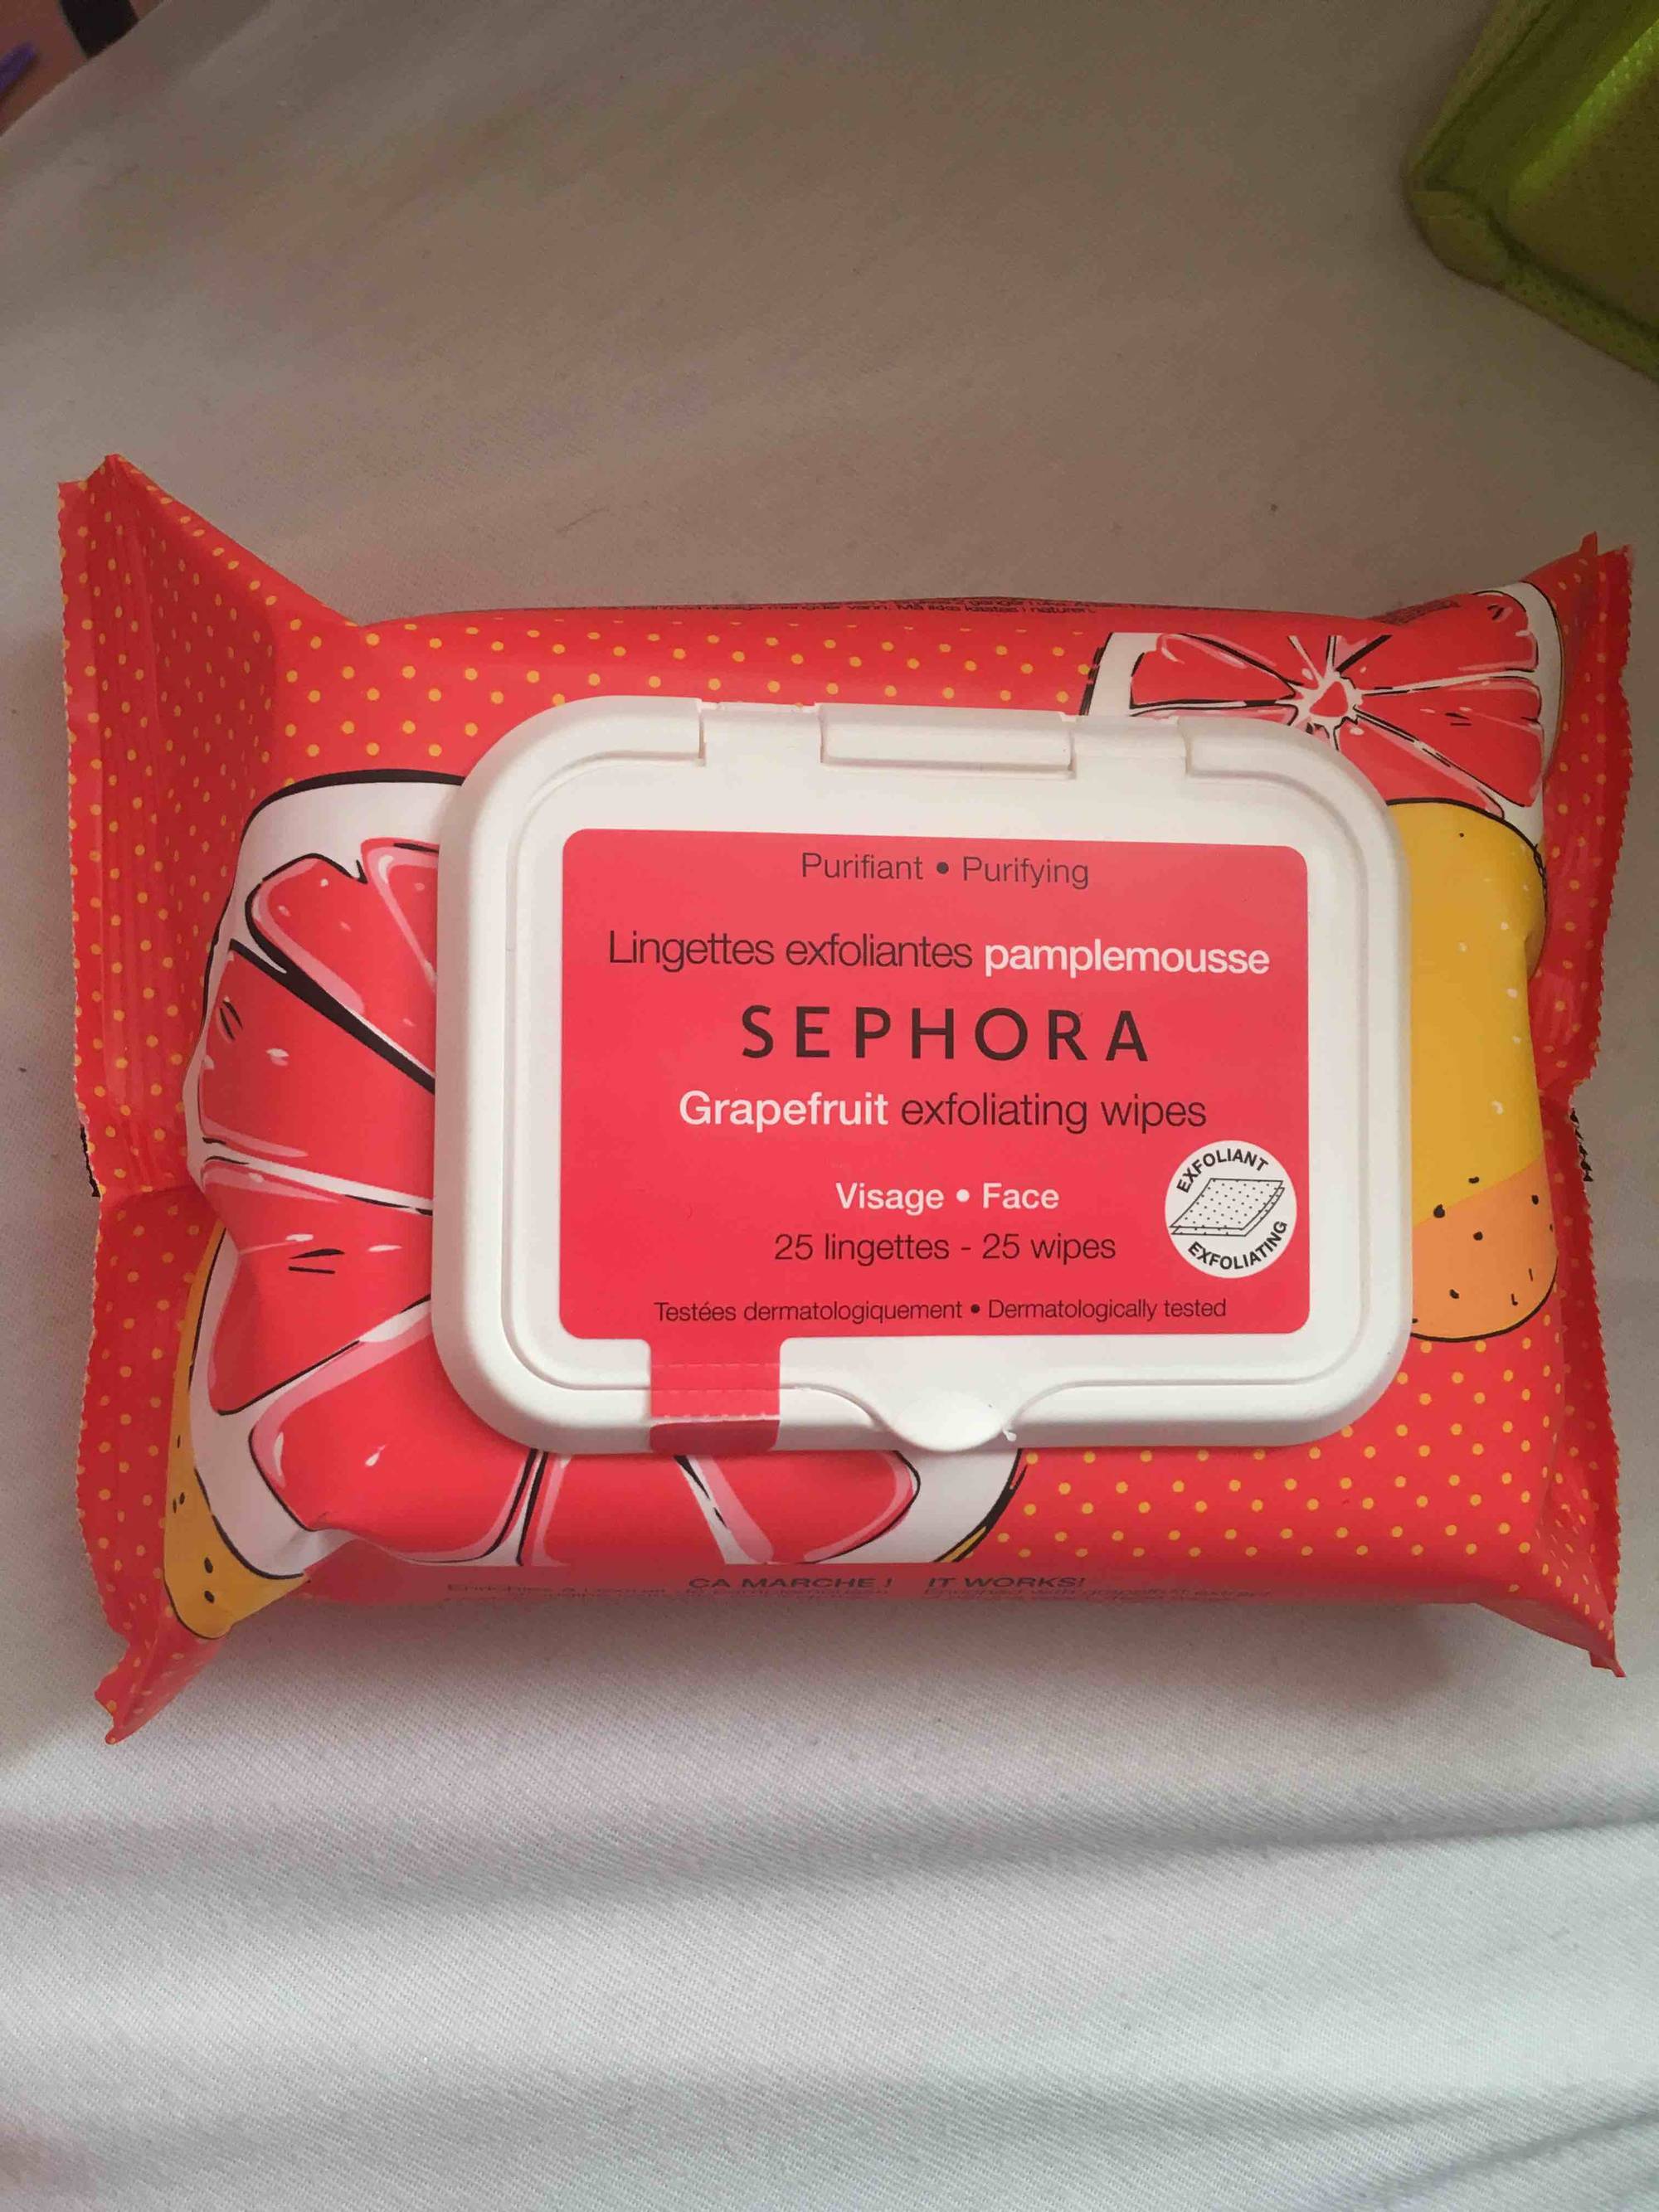 SEPHORA - Lingettes exfoliantes pamplemousse